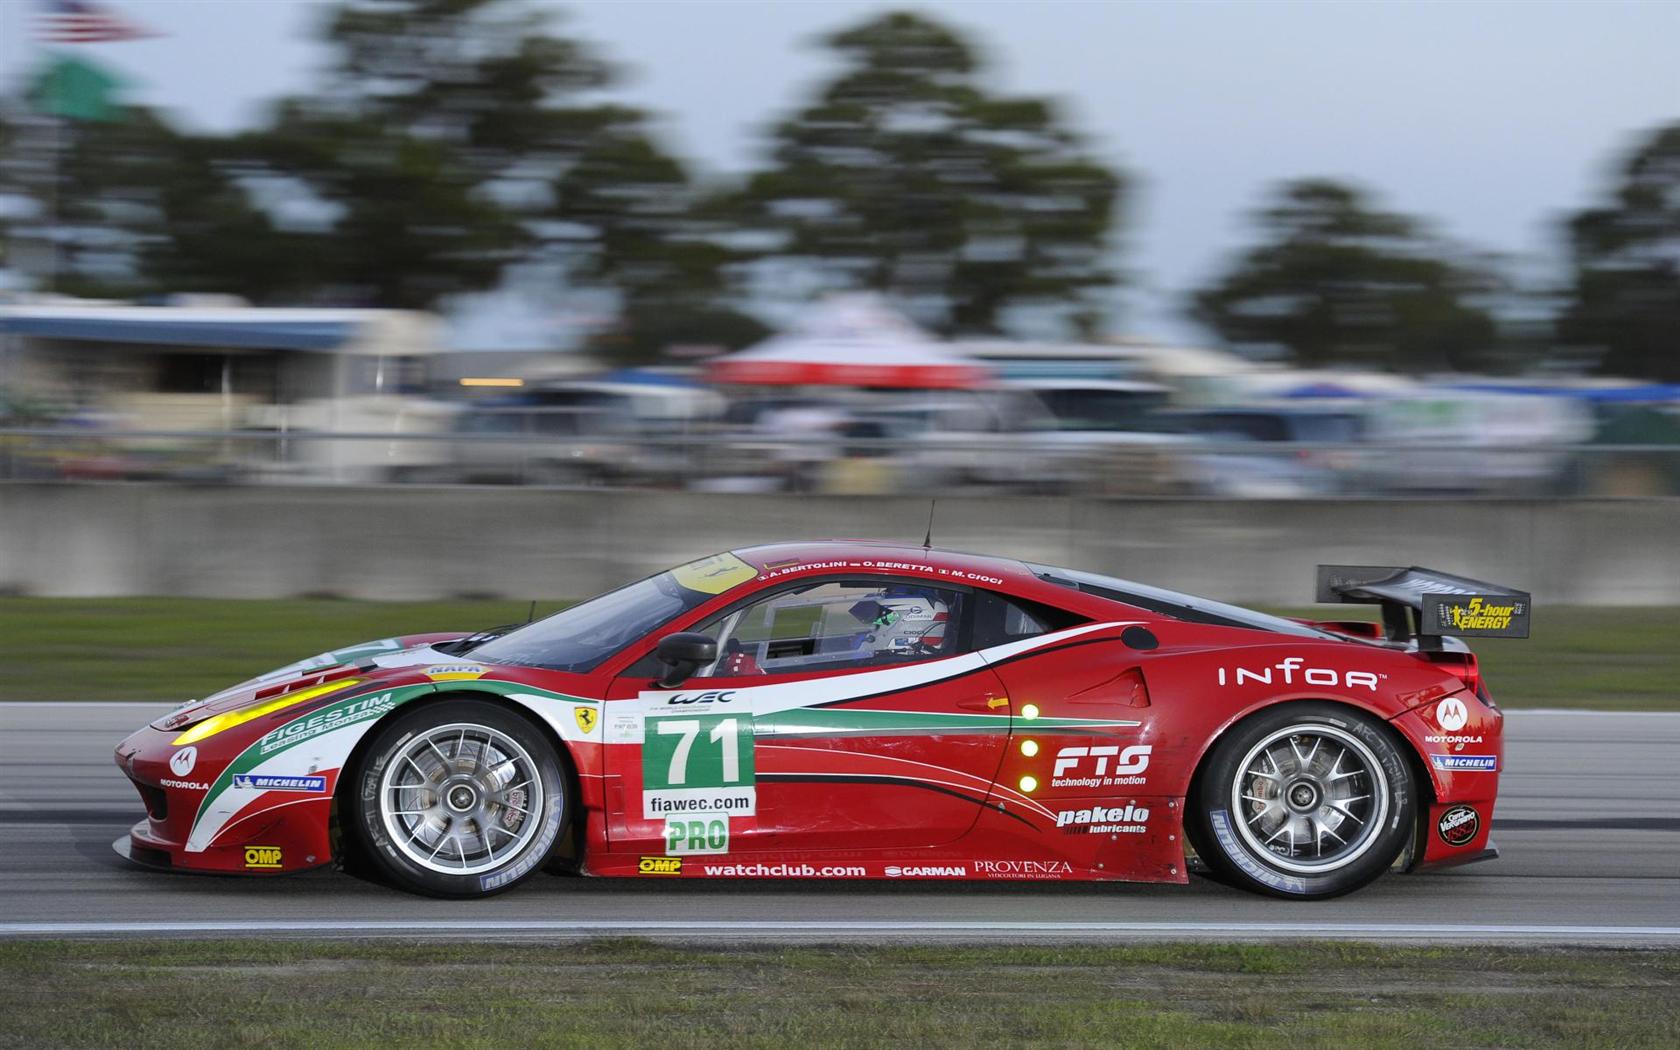 2012 Ferrari 458 Italia GT2